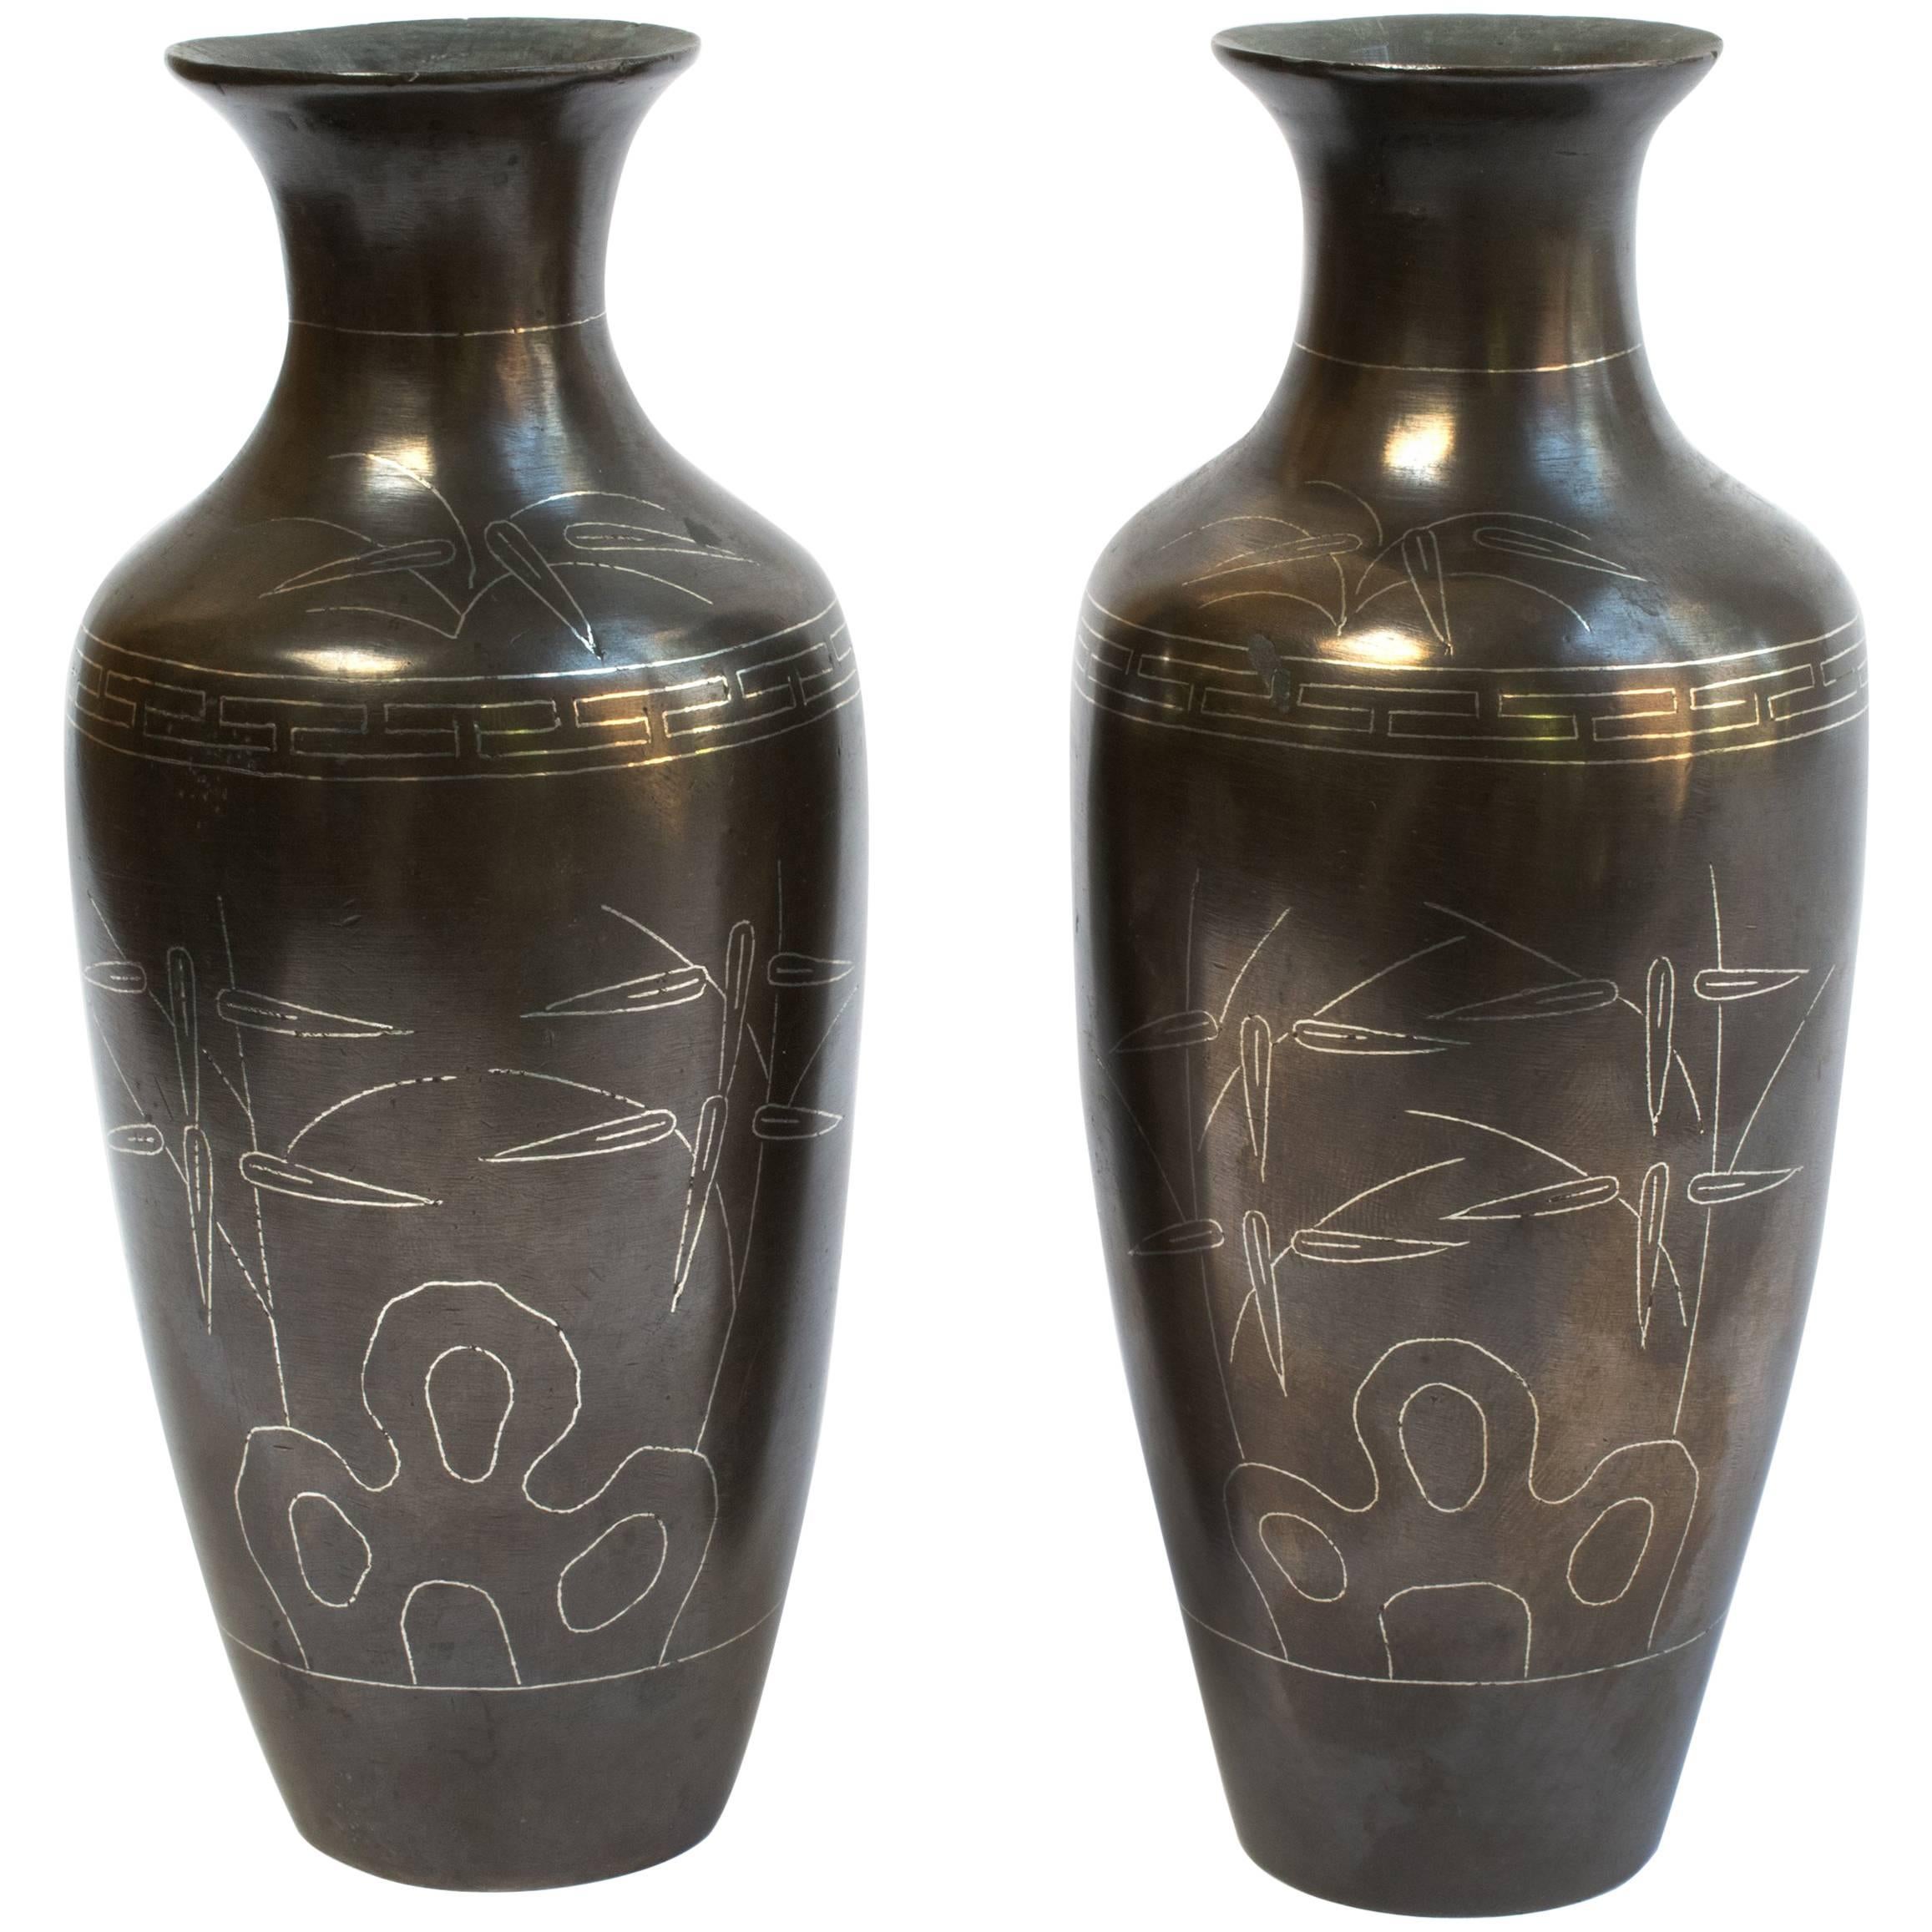 Pair of Chinese Bronze Shih So Vases, c. 1800